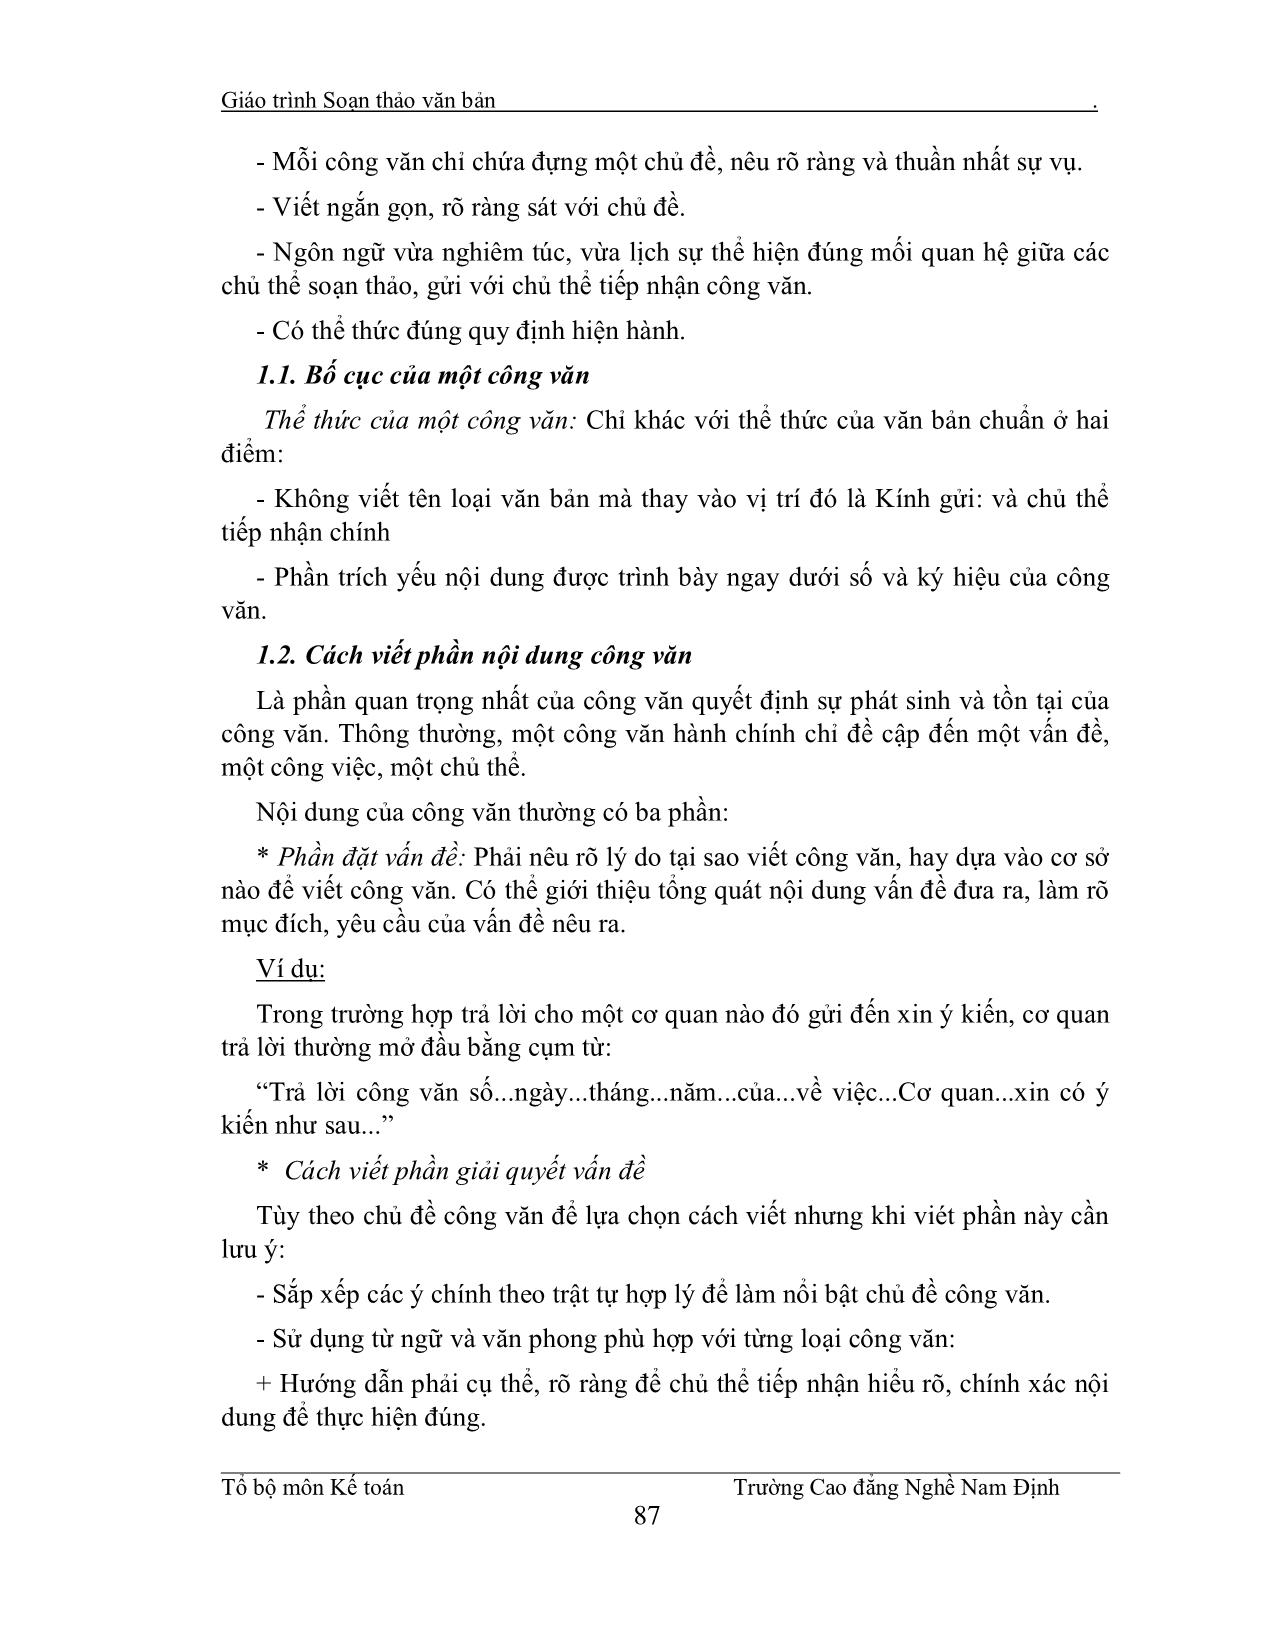 Giáo trình Soạn thảo văn bản (Phần 2) trang 4